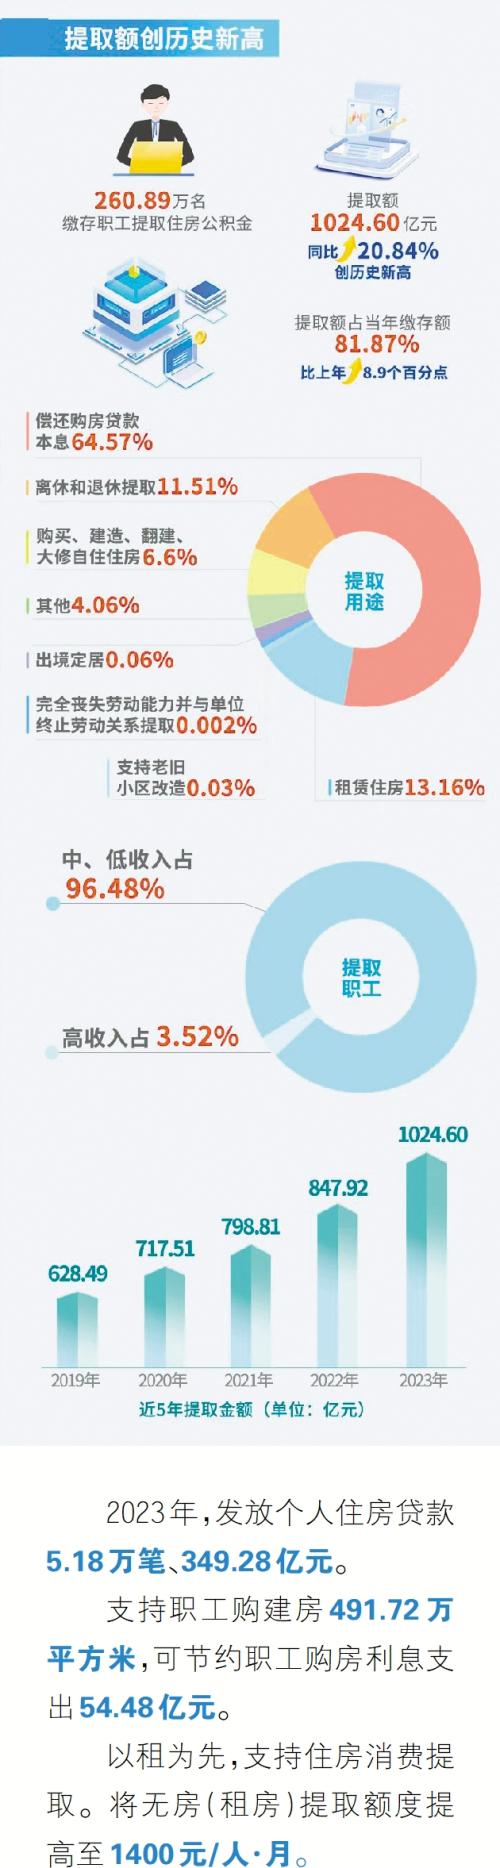 创新高 广州住房公积金去年提取额破千亿元